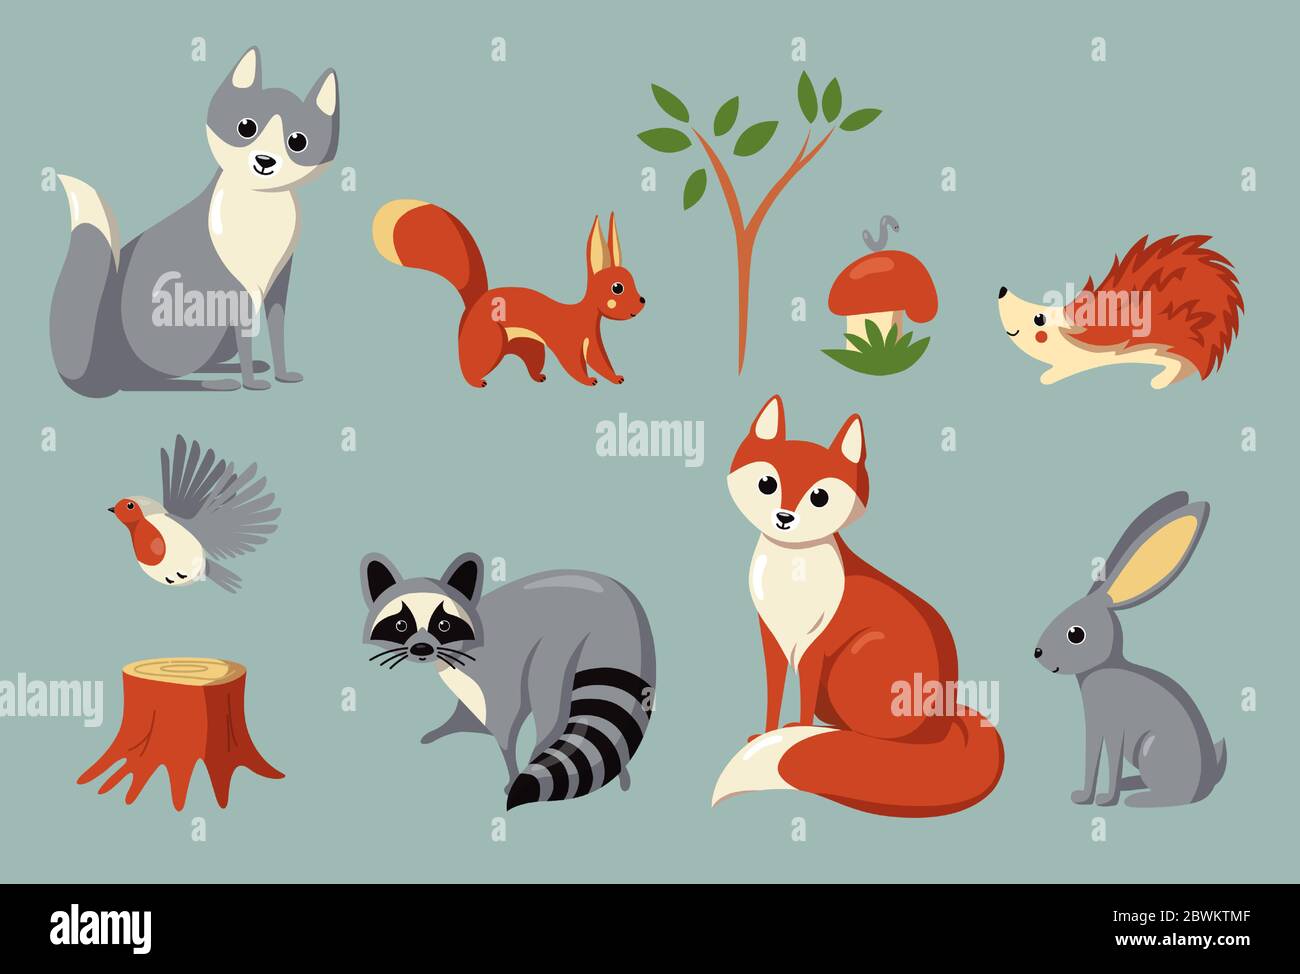 Conjunto de animales del bosque, aves, hongos y plantas. Ilustración vectorial en un estilo de dibujos animados Ilustración del Vector